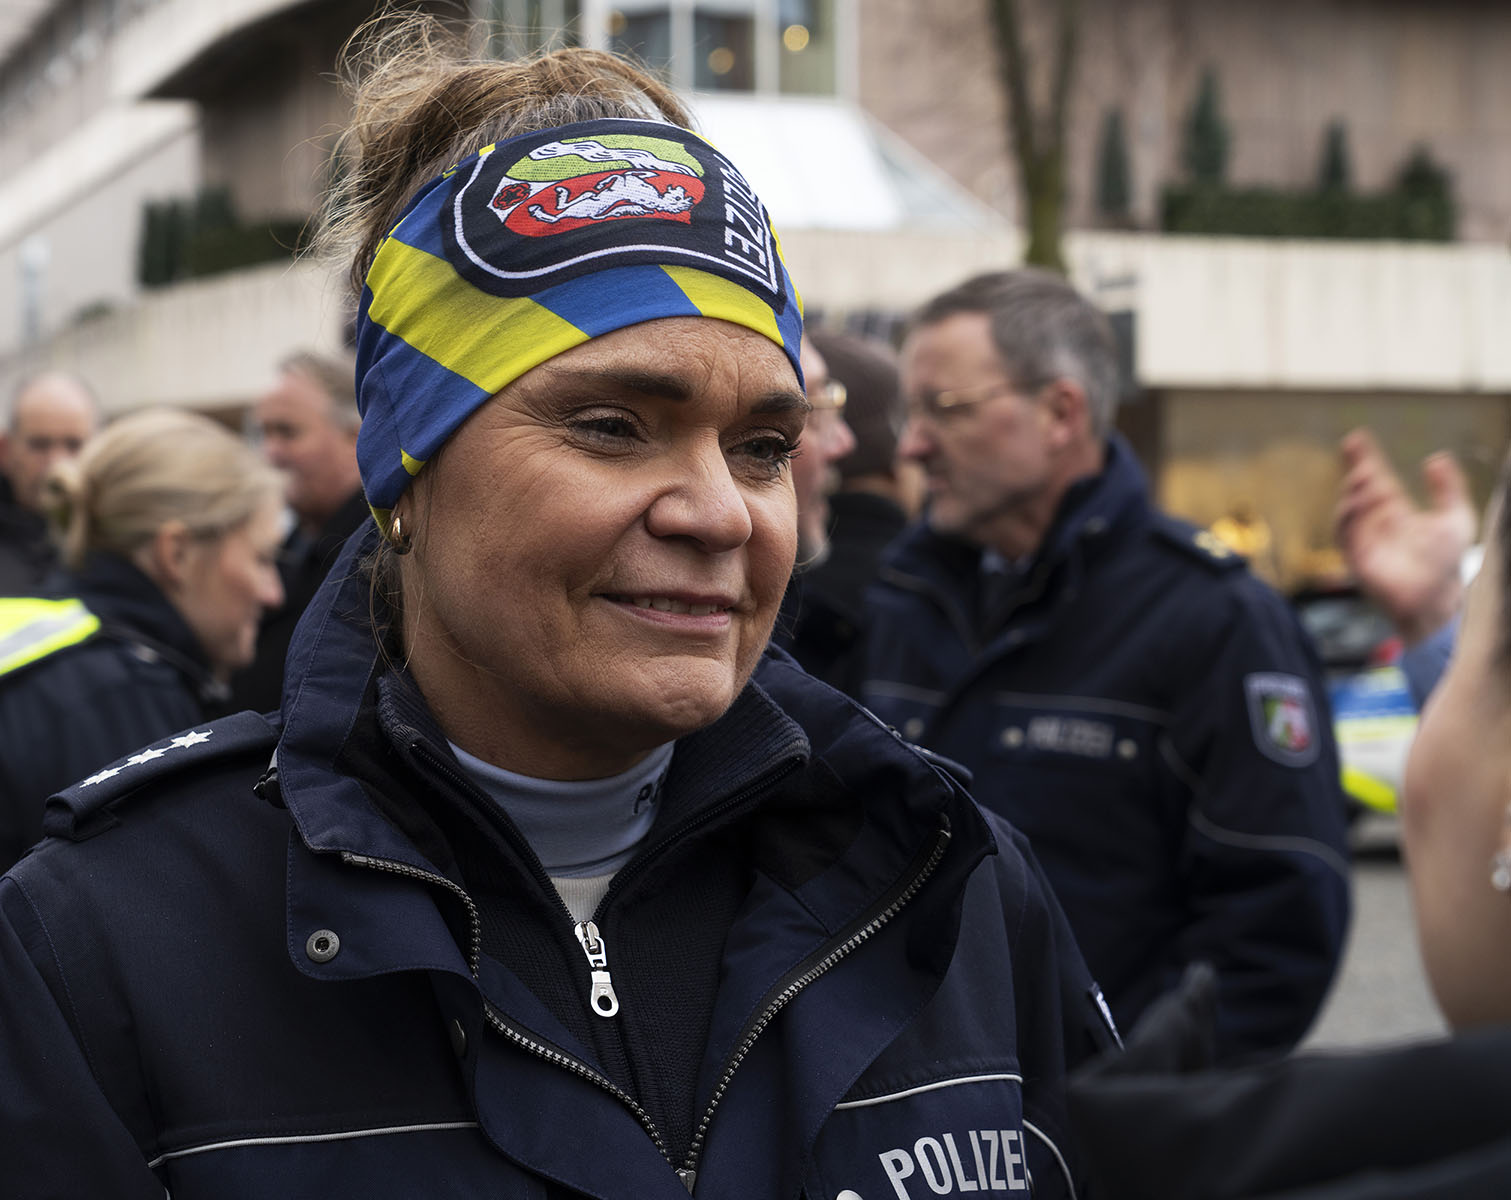 Coffee with a cop - Die Polizei lädt ein